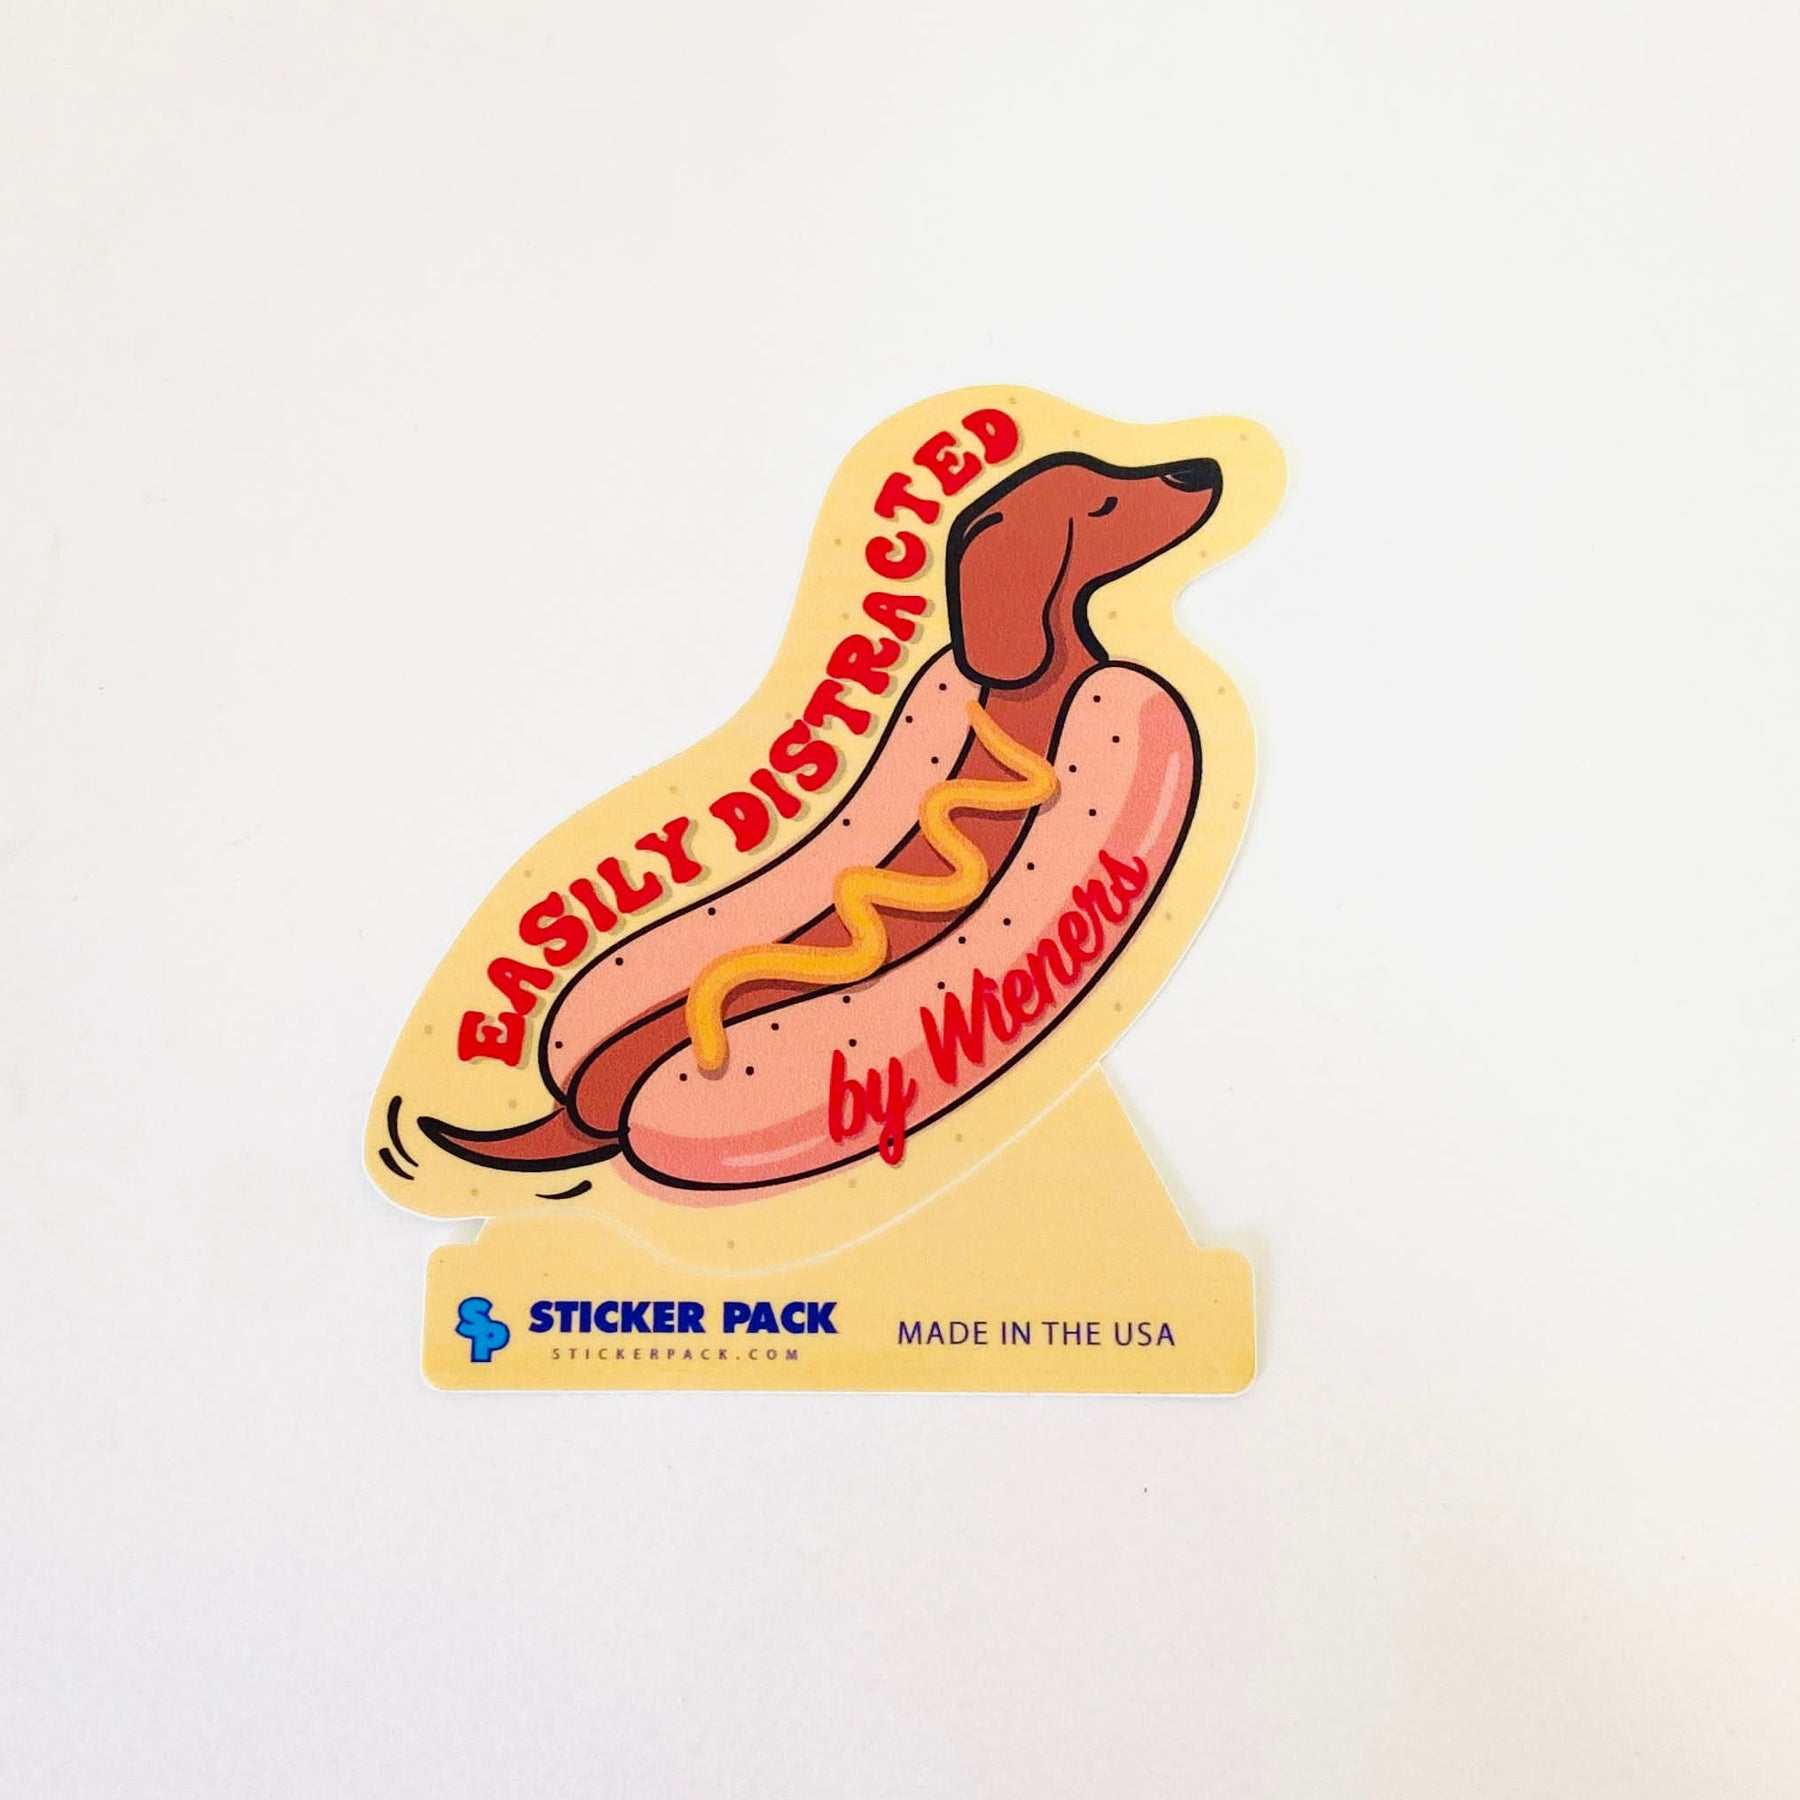 Wiener Teckel - sticker